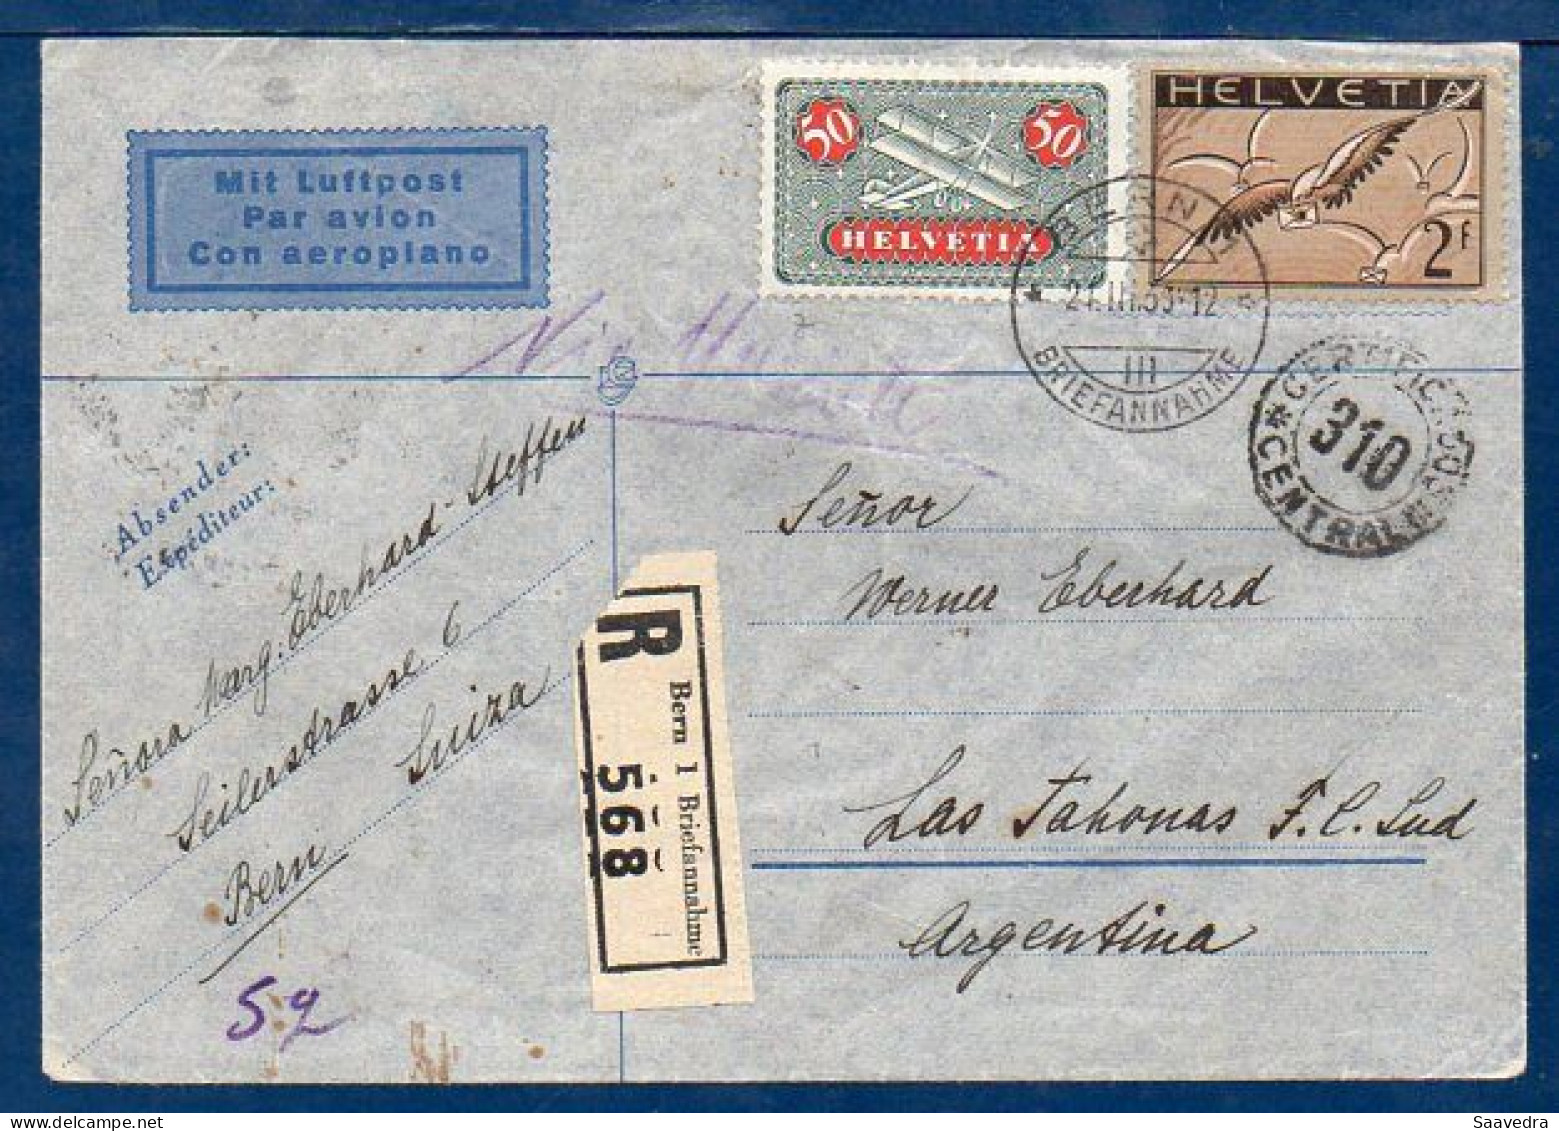 Switzerland To Argentina, 1936, Via Air France  (008) - Poste Aérienne